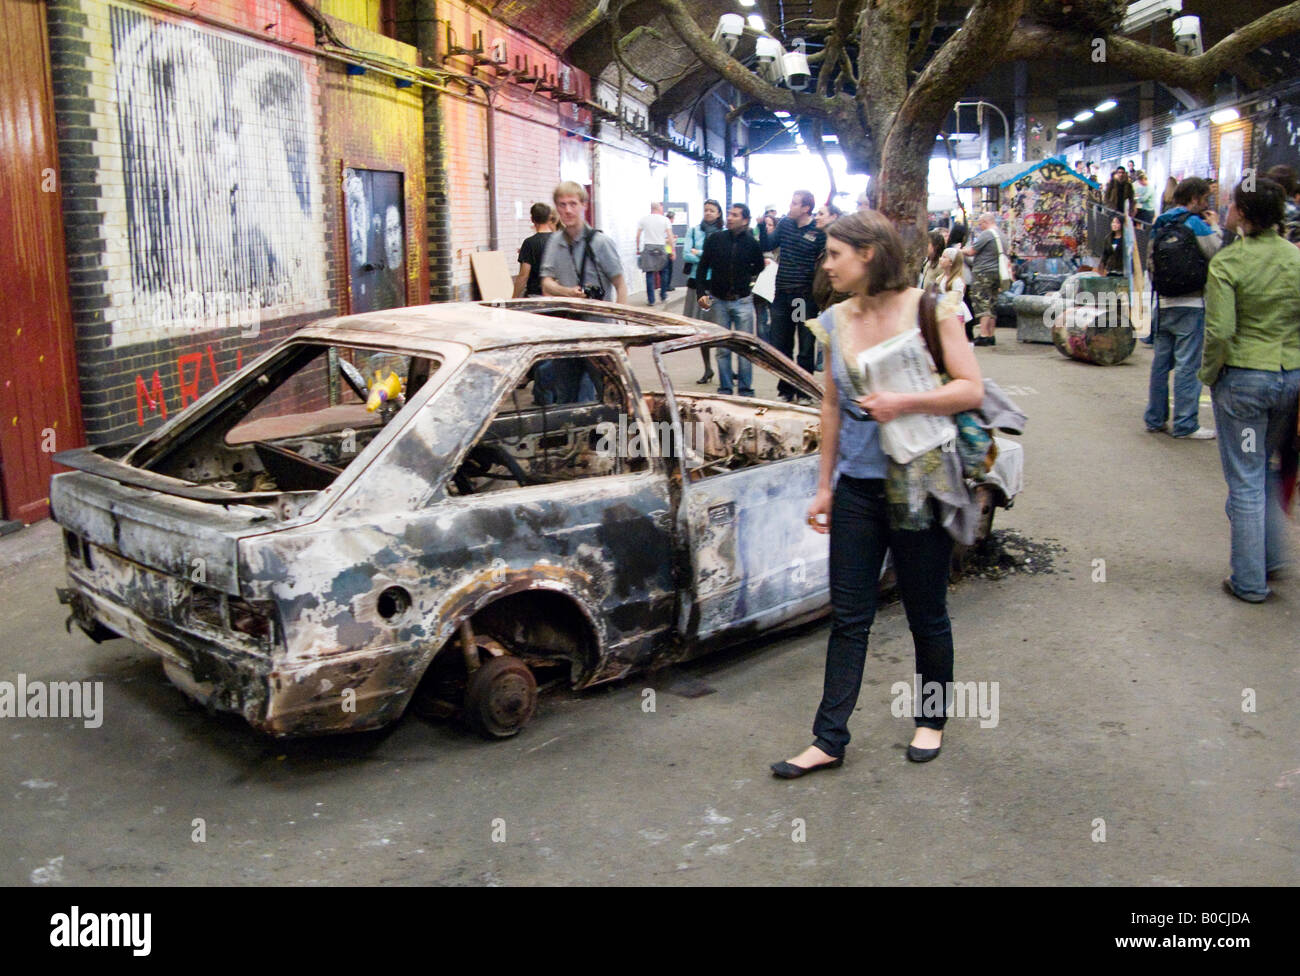 Burnt Out dépouillé car - une image de la boîte, un Festival London street artiste graffito exposition Banksy a aidé à ouvrir Banque D'Images